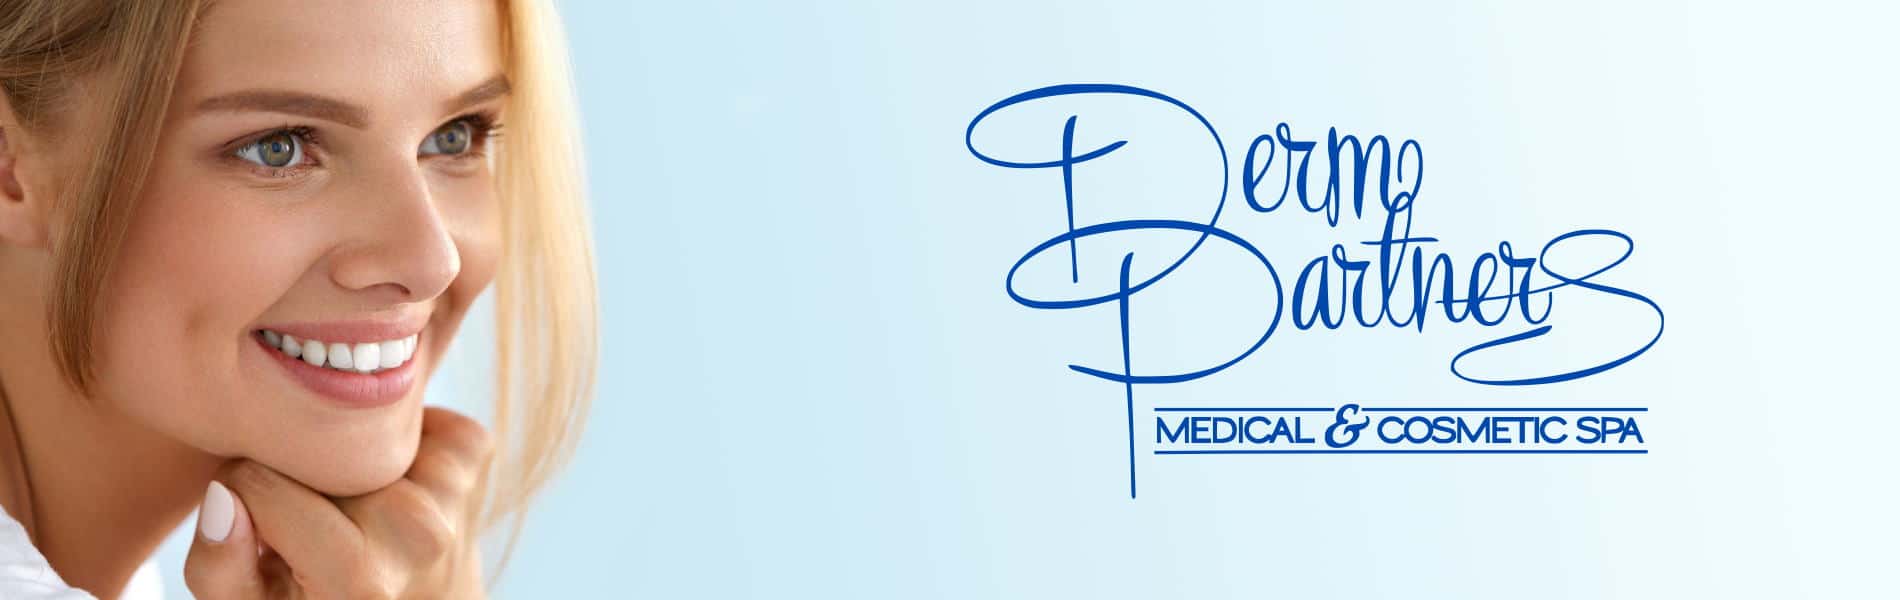 MedSpa Facial Services in Boca Raton